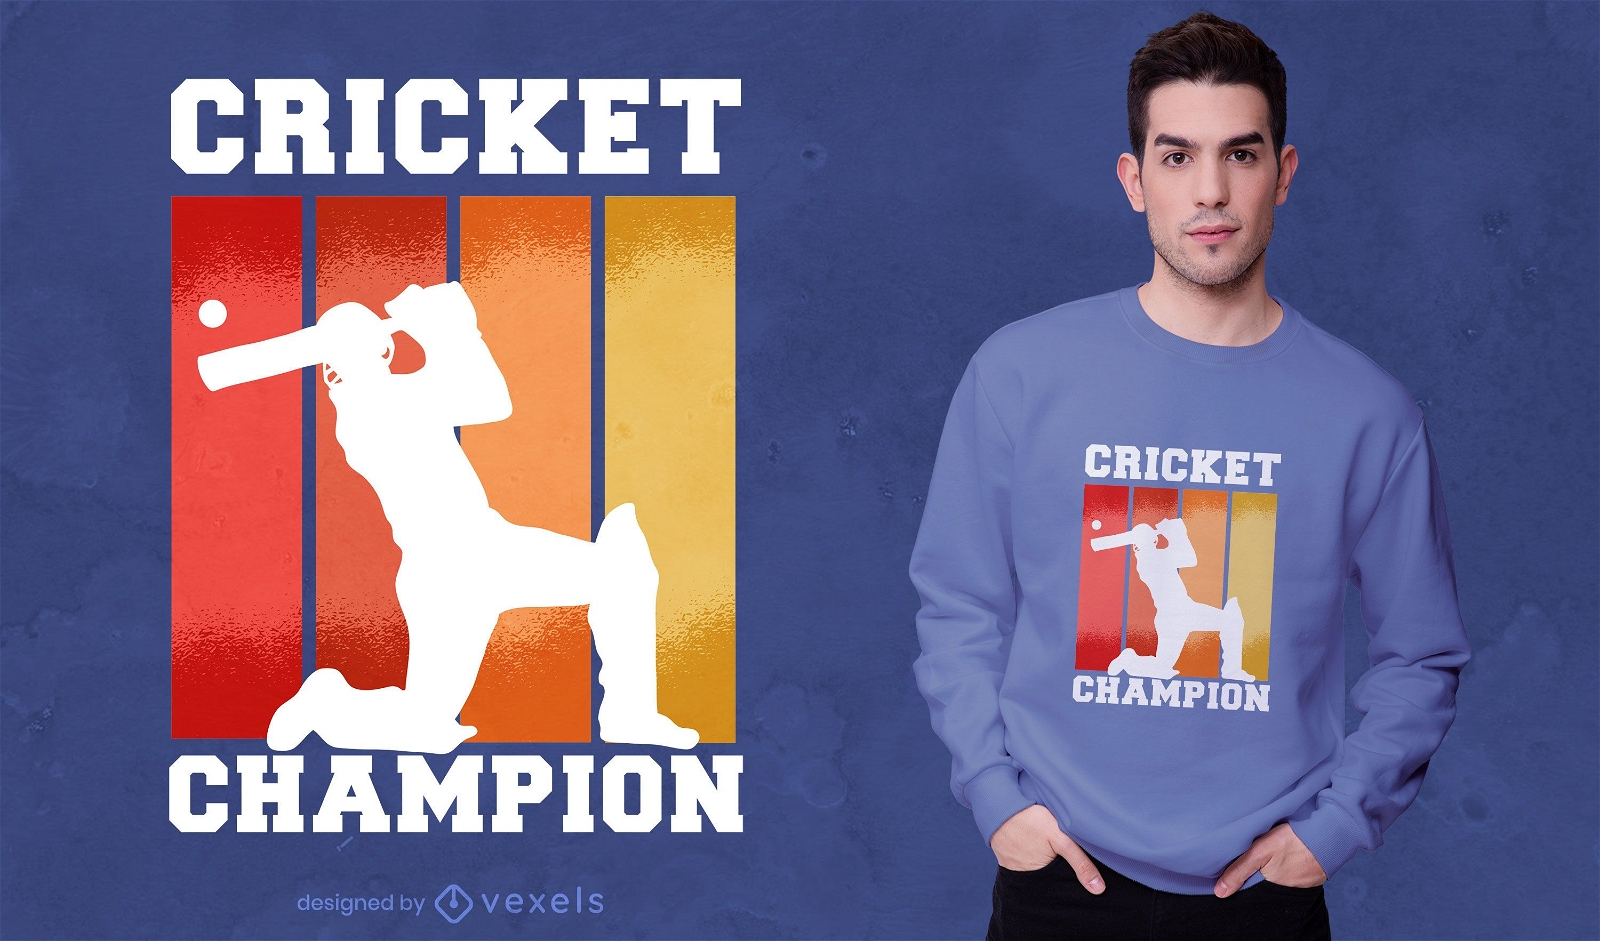 Cricket-Spieler Champion T-Shirt Design